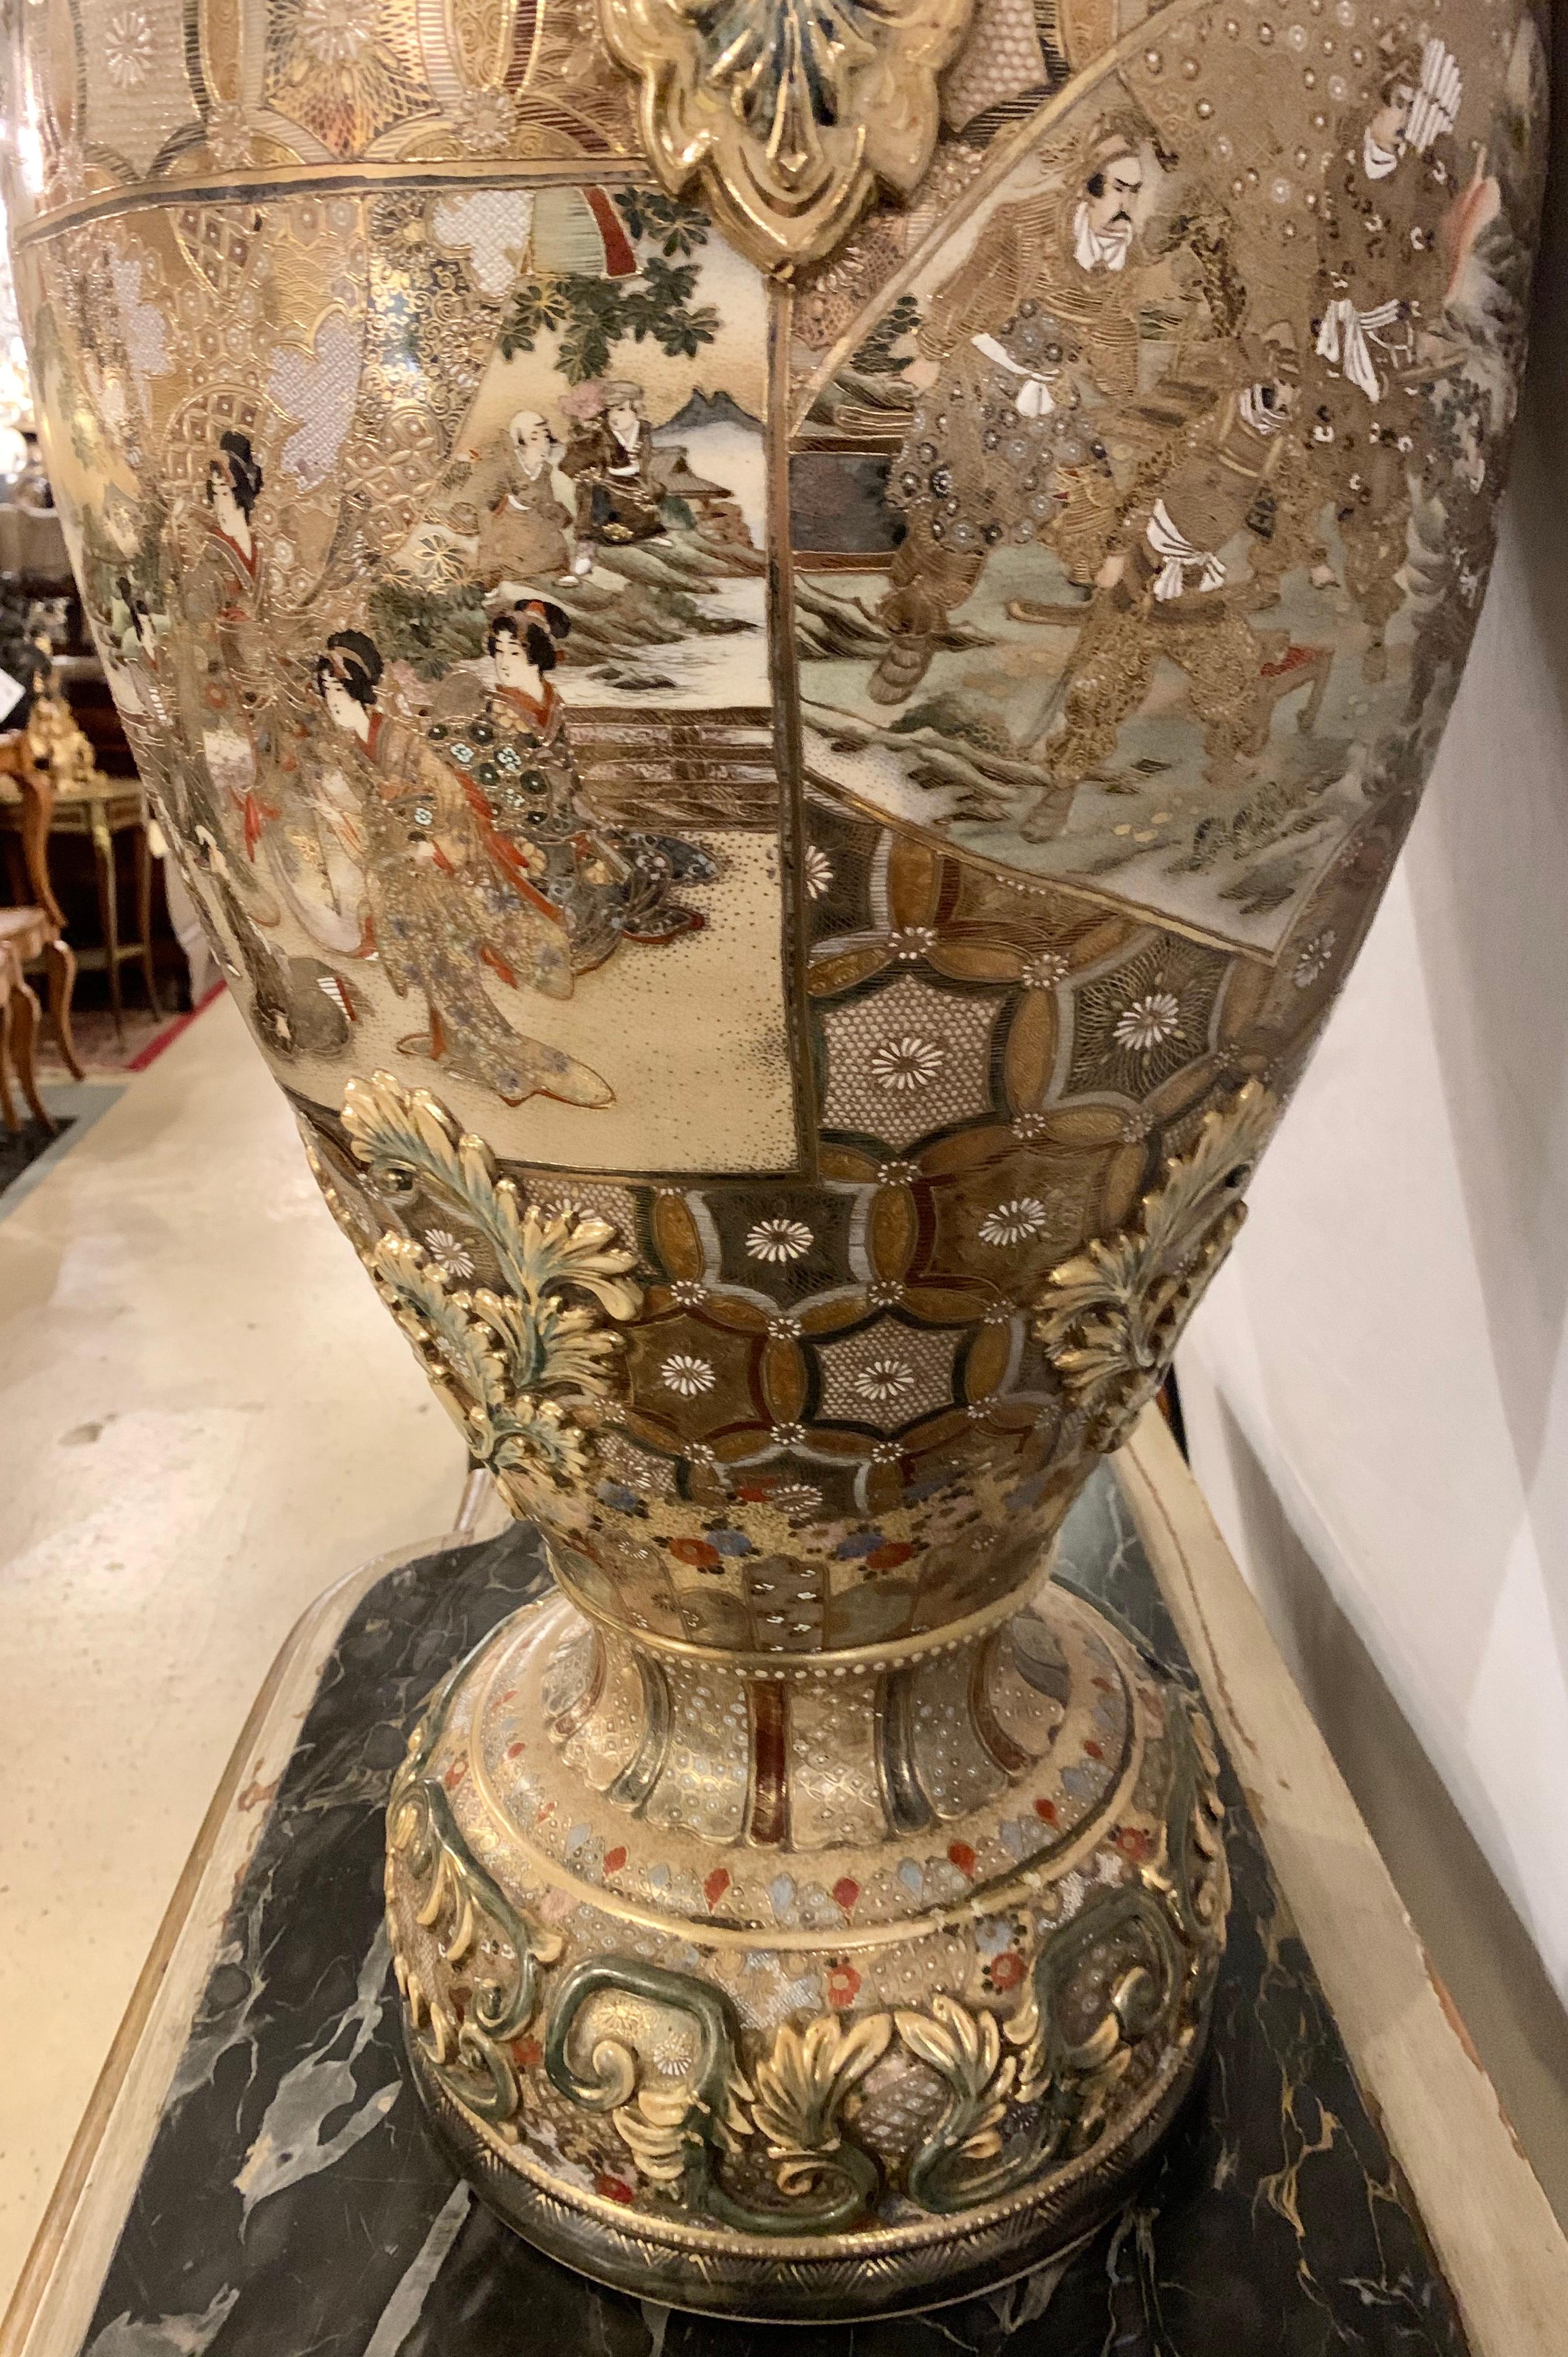 Satsuma Thousand Face Vase or Urn Palace Sized Twin Handled 3